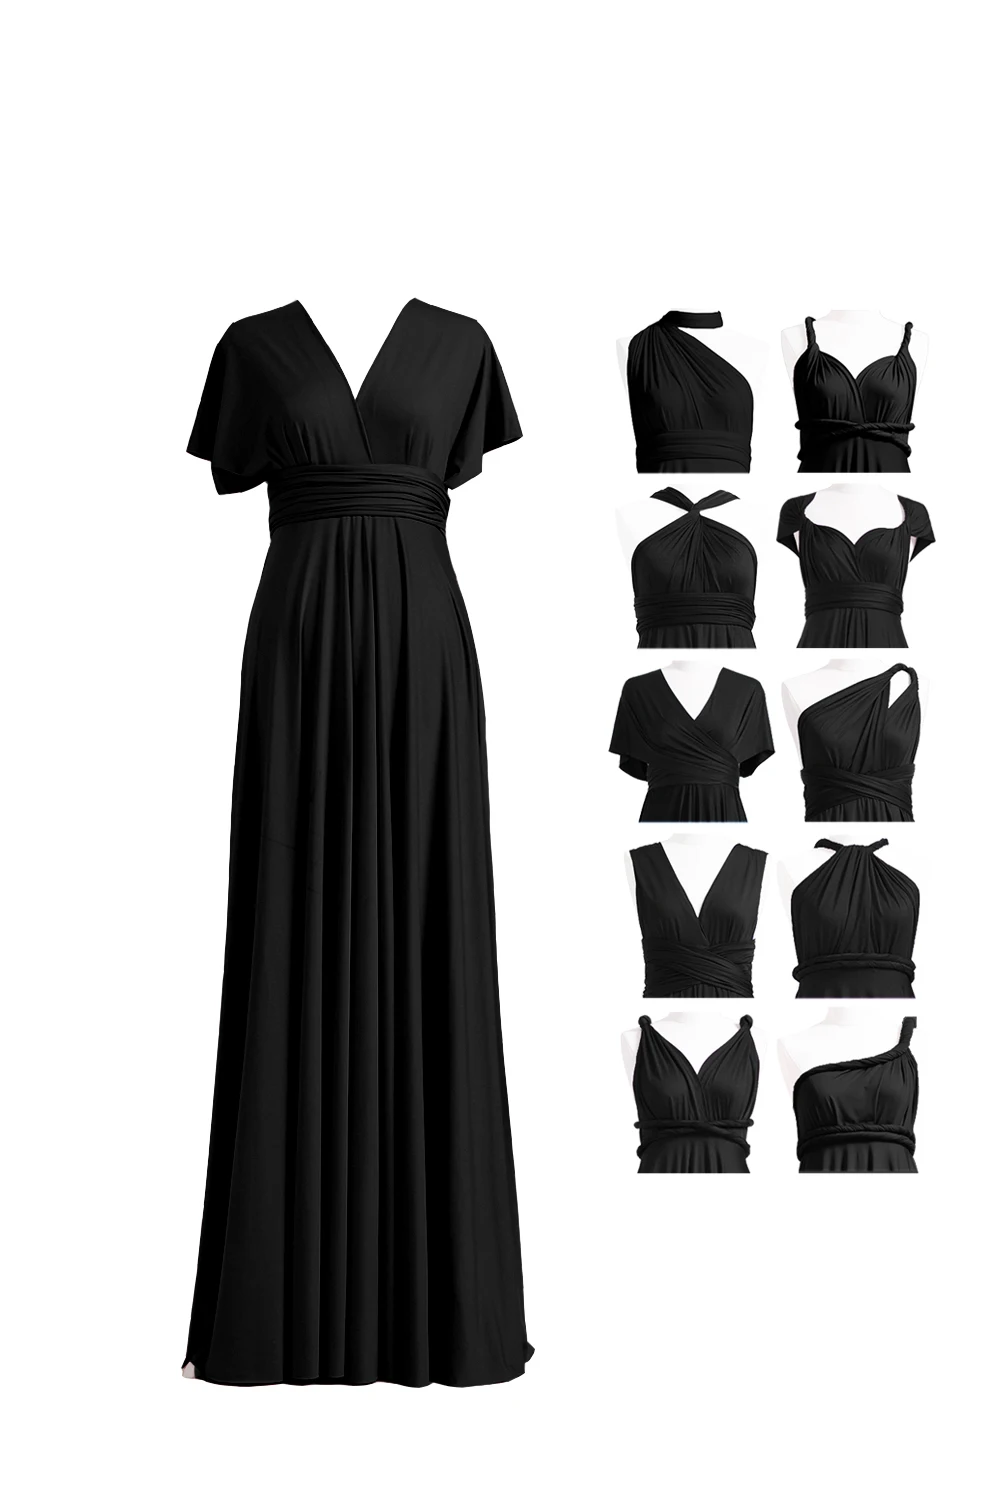 Темно-синее коктейльное платье Бесконечность Макси длинное платье многоходовое платье размера плюс платье-трансформер с запахом вечерние коктейльные платья - Color: Black